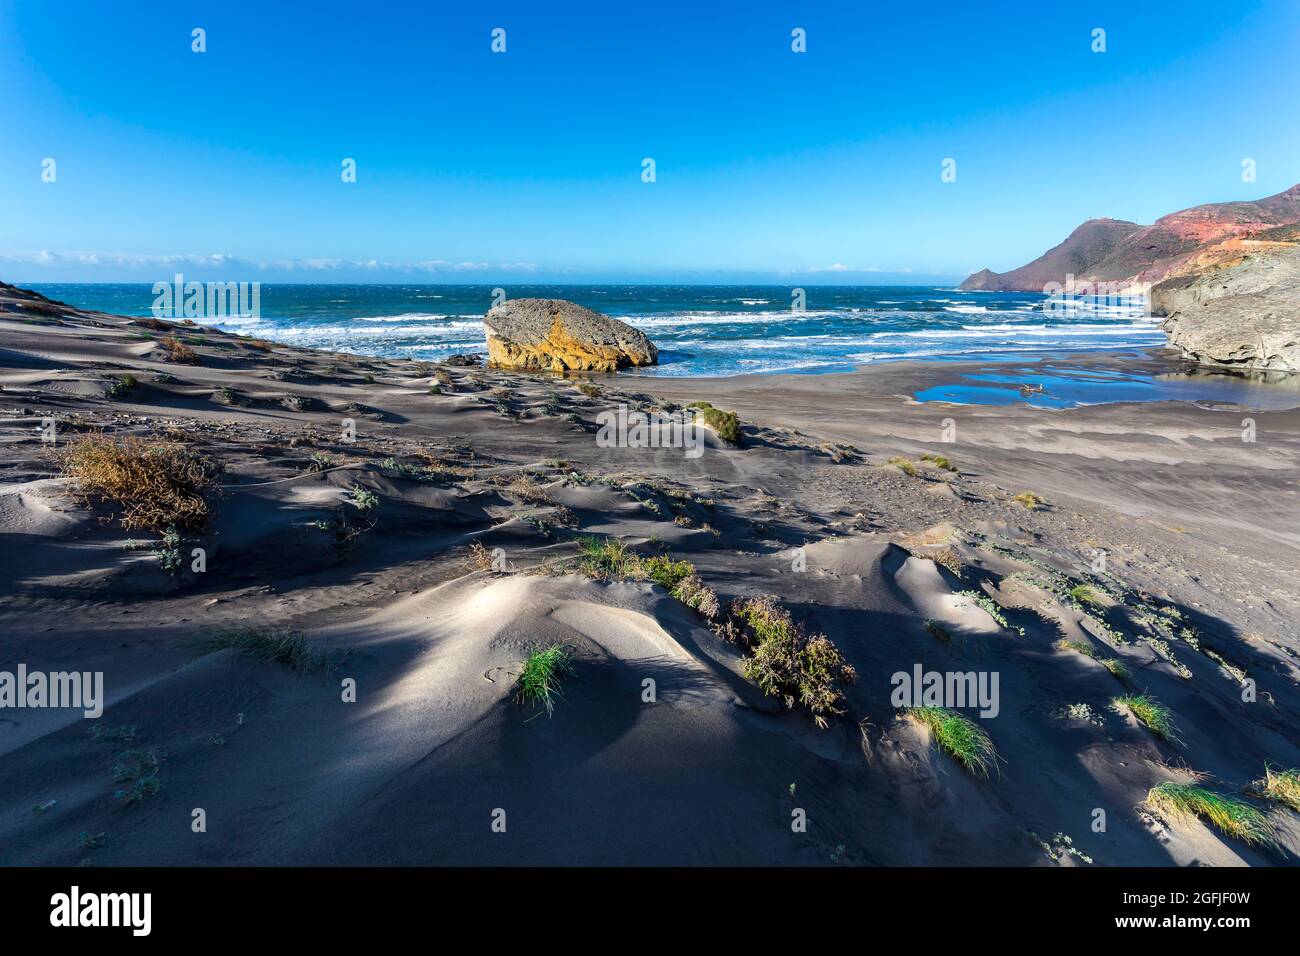 Paysage de la zone côtière Cabo de Gata, province d'Almeria, Andalousie, Espagne. Plage Playa de Monsul le long de la côte méditerranéenne, Cabo de Gata N Banque D'Images